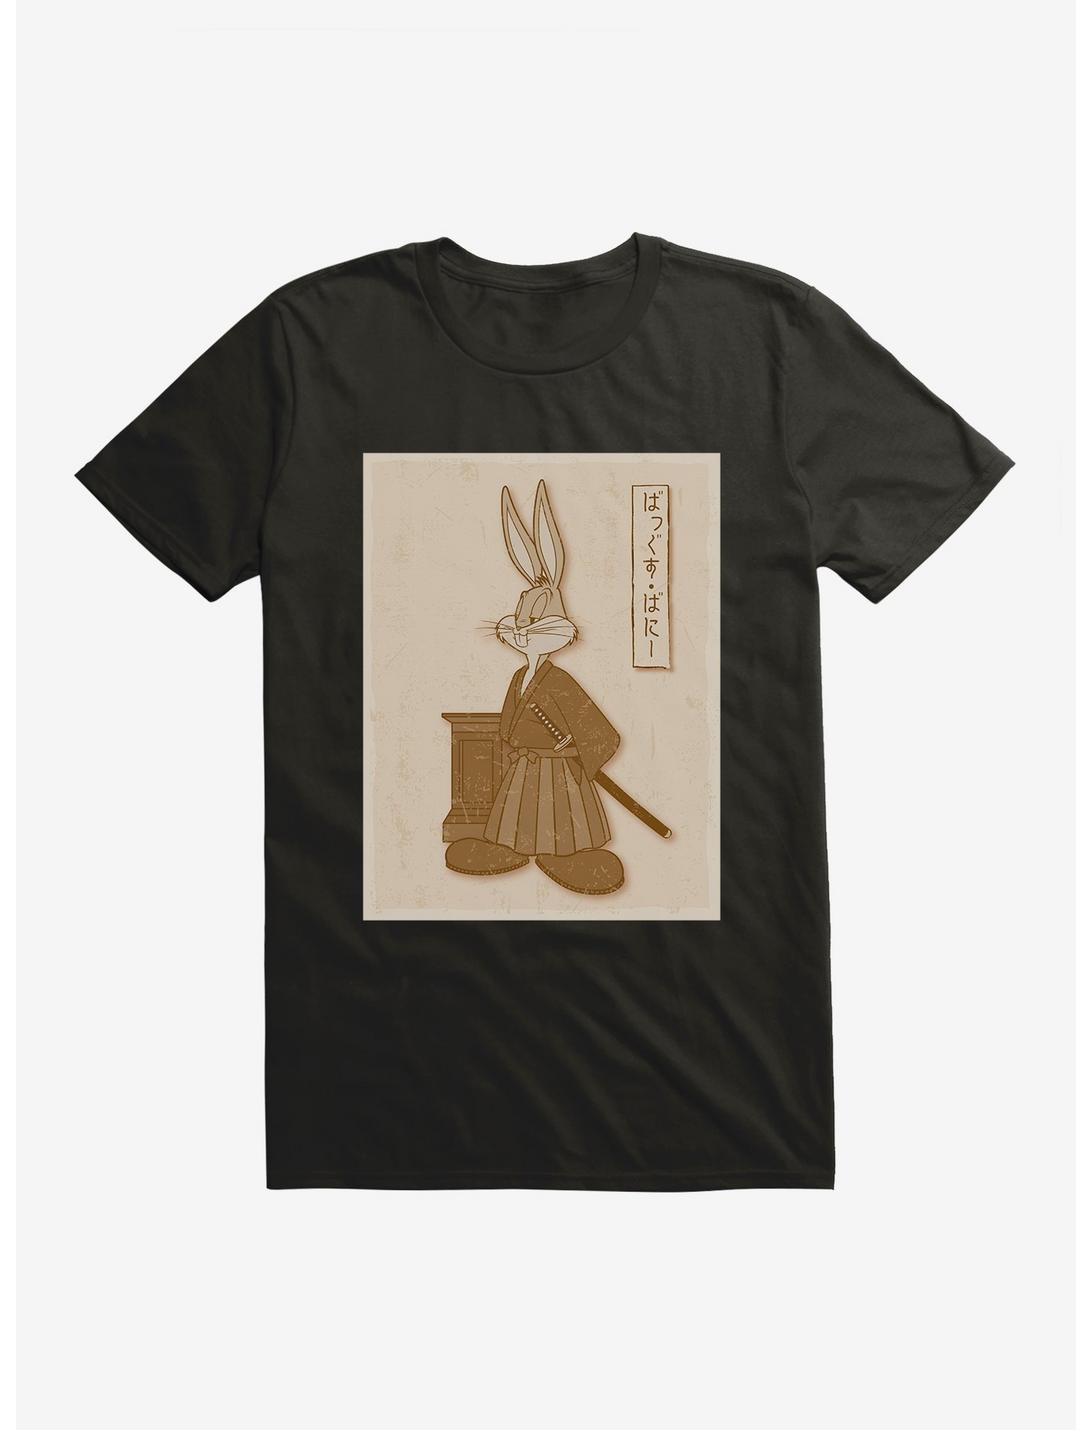 Looney Tunes Sepia Bugs Bunny T-Shirt, , hi-res